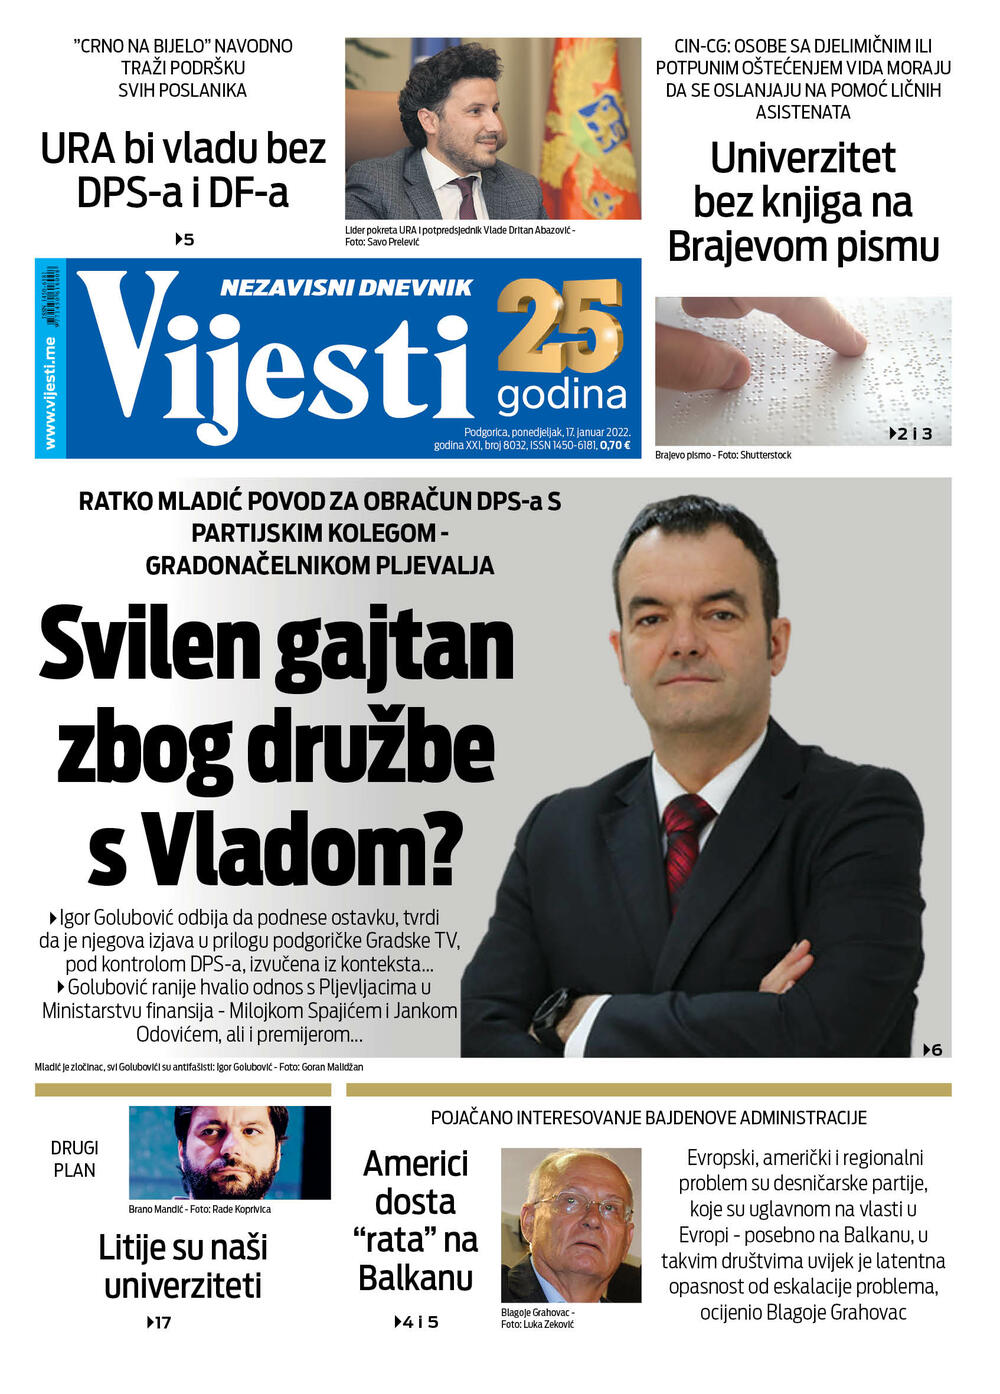 Naslovna strana "Vijesti" za 17.1.2022., Foto: Vijesti